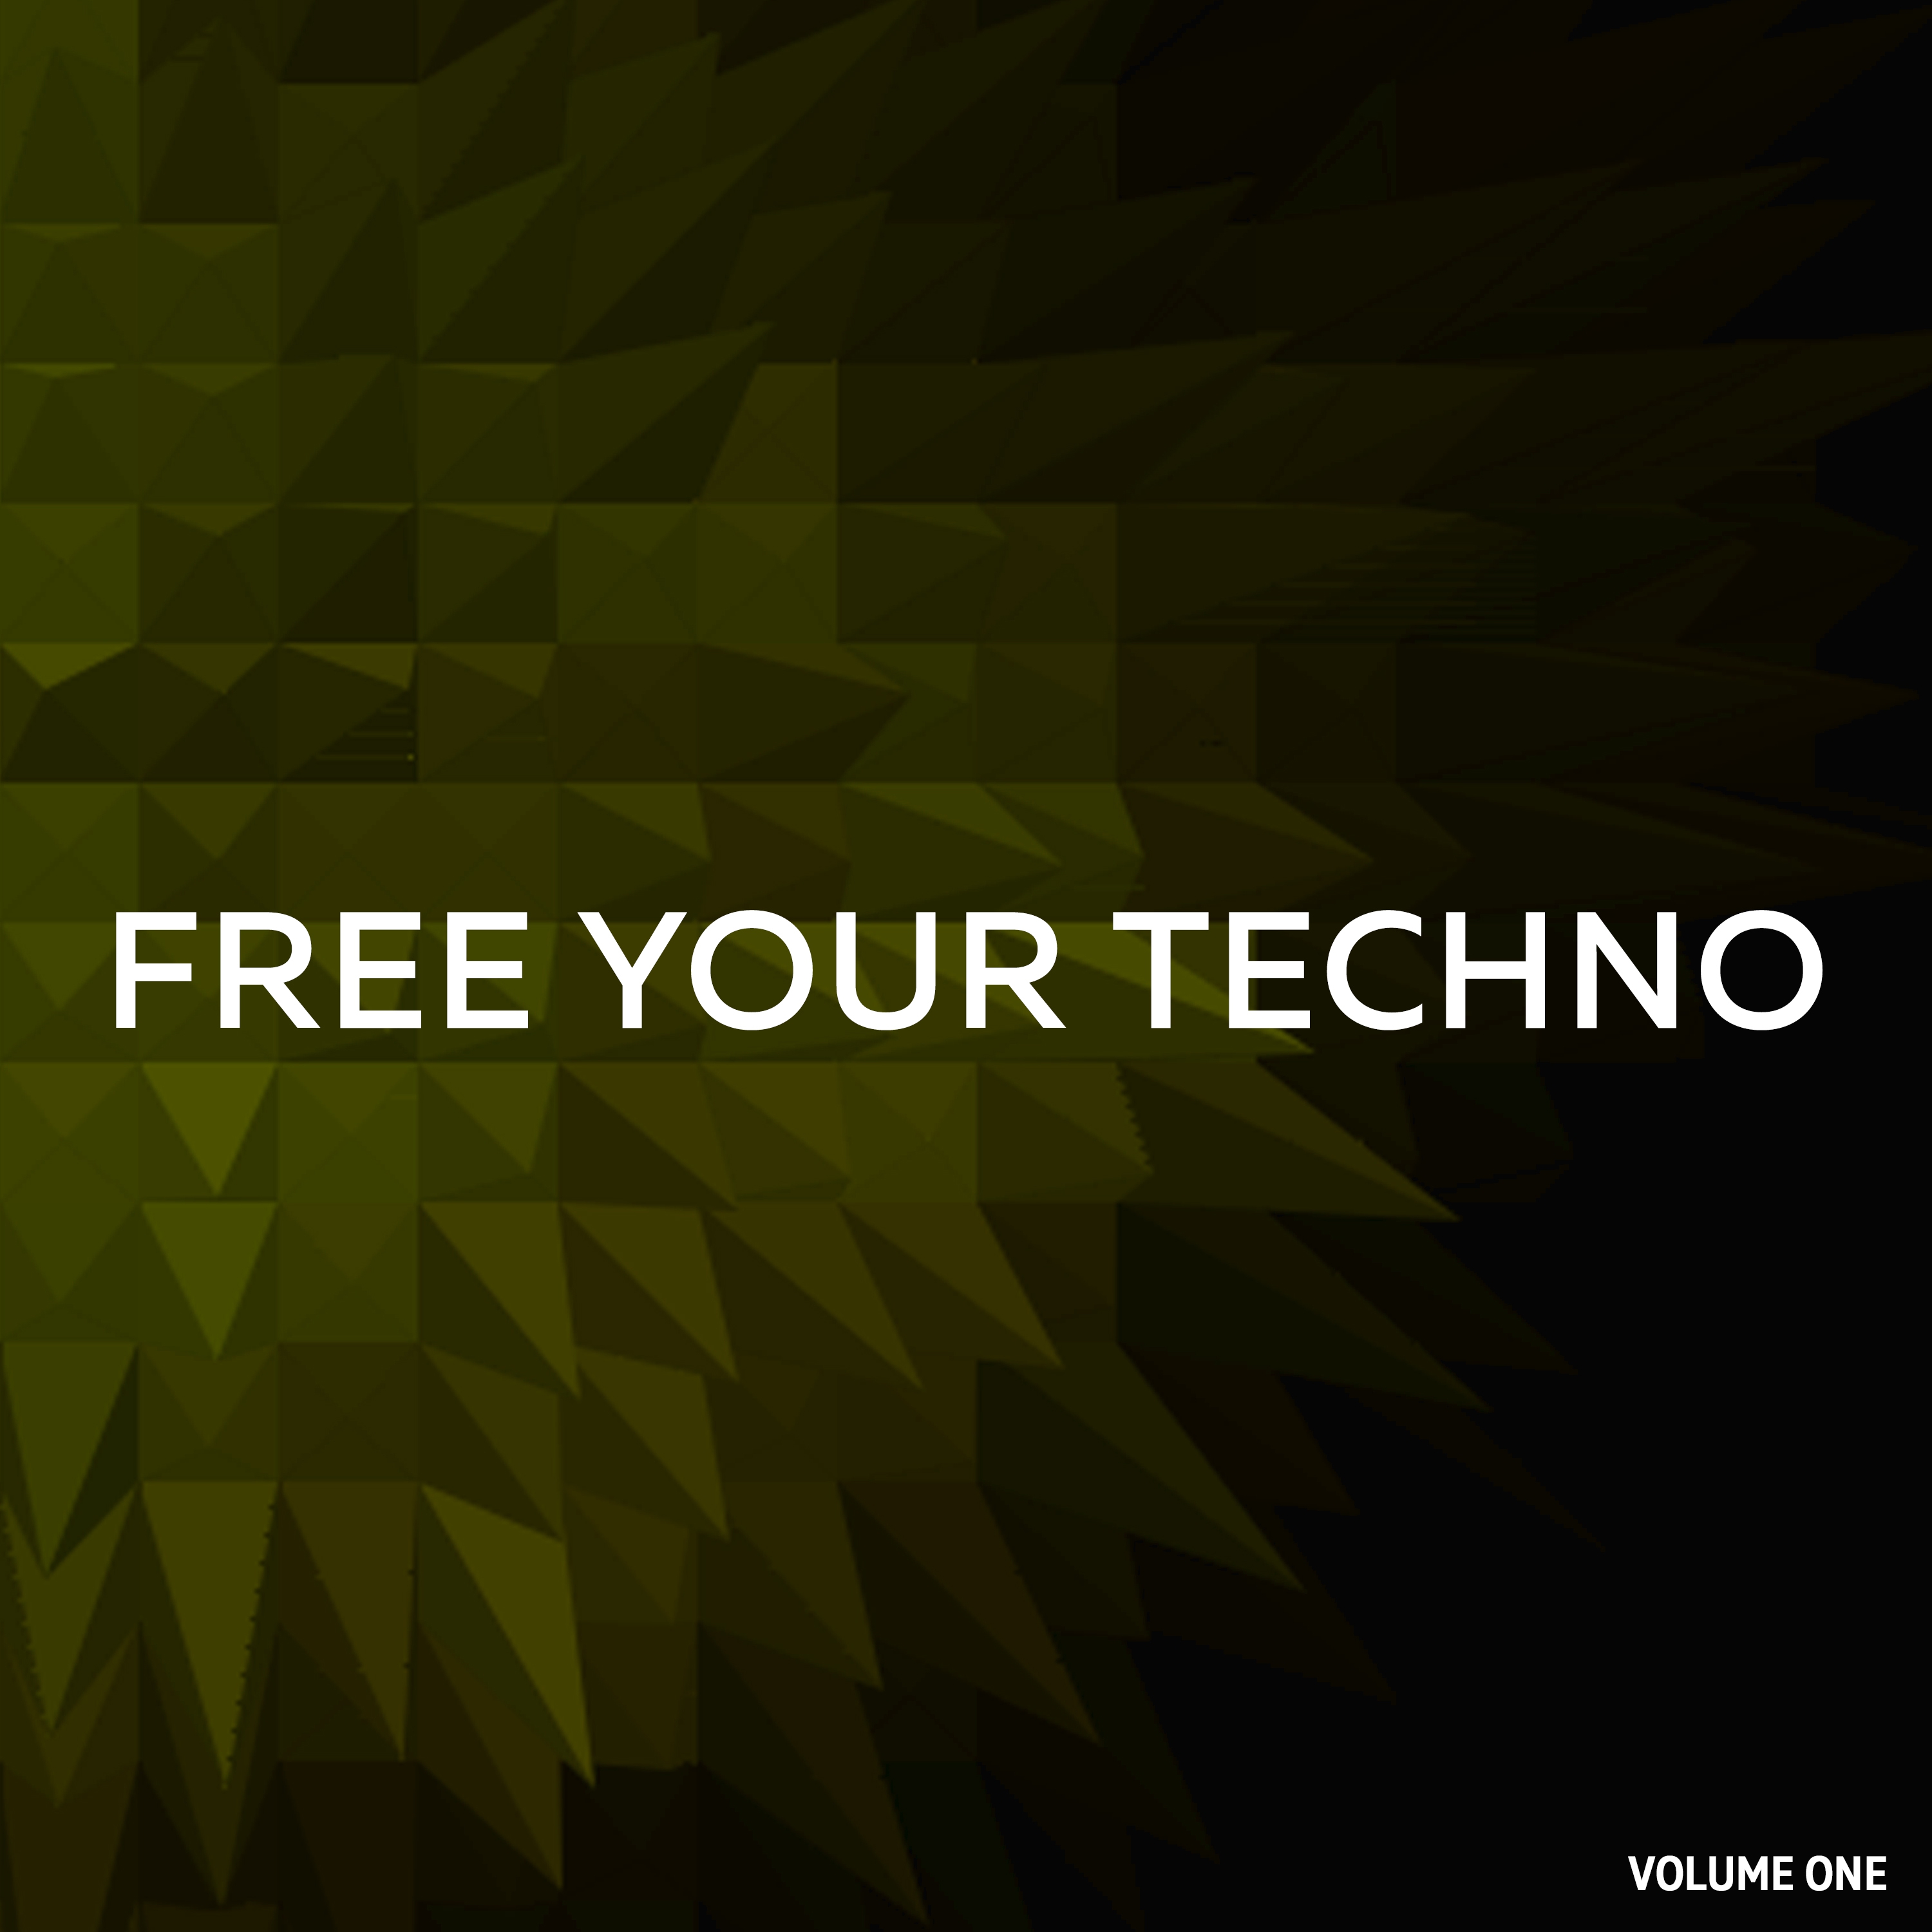 Free Your Techno, Vol. 1